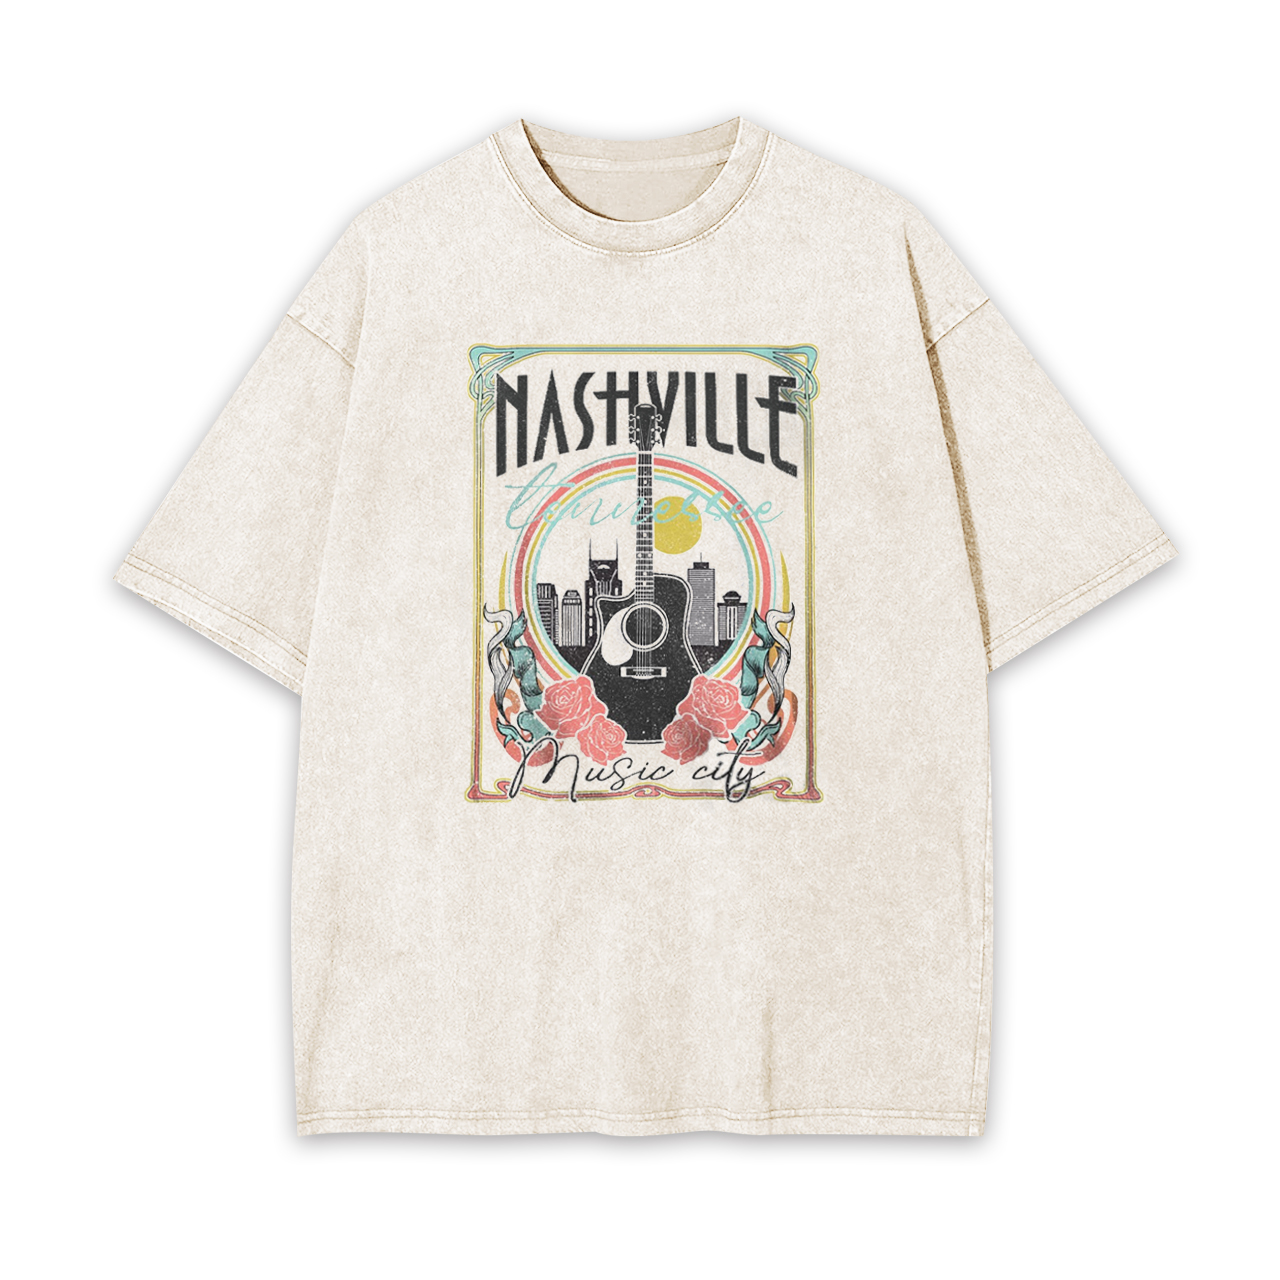 Nashville Music City Garment-dye Tees